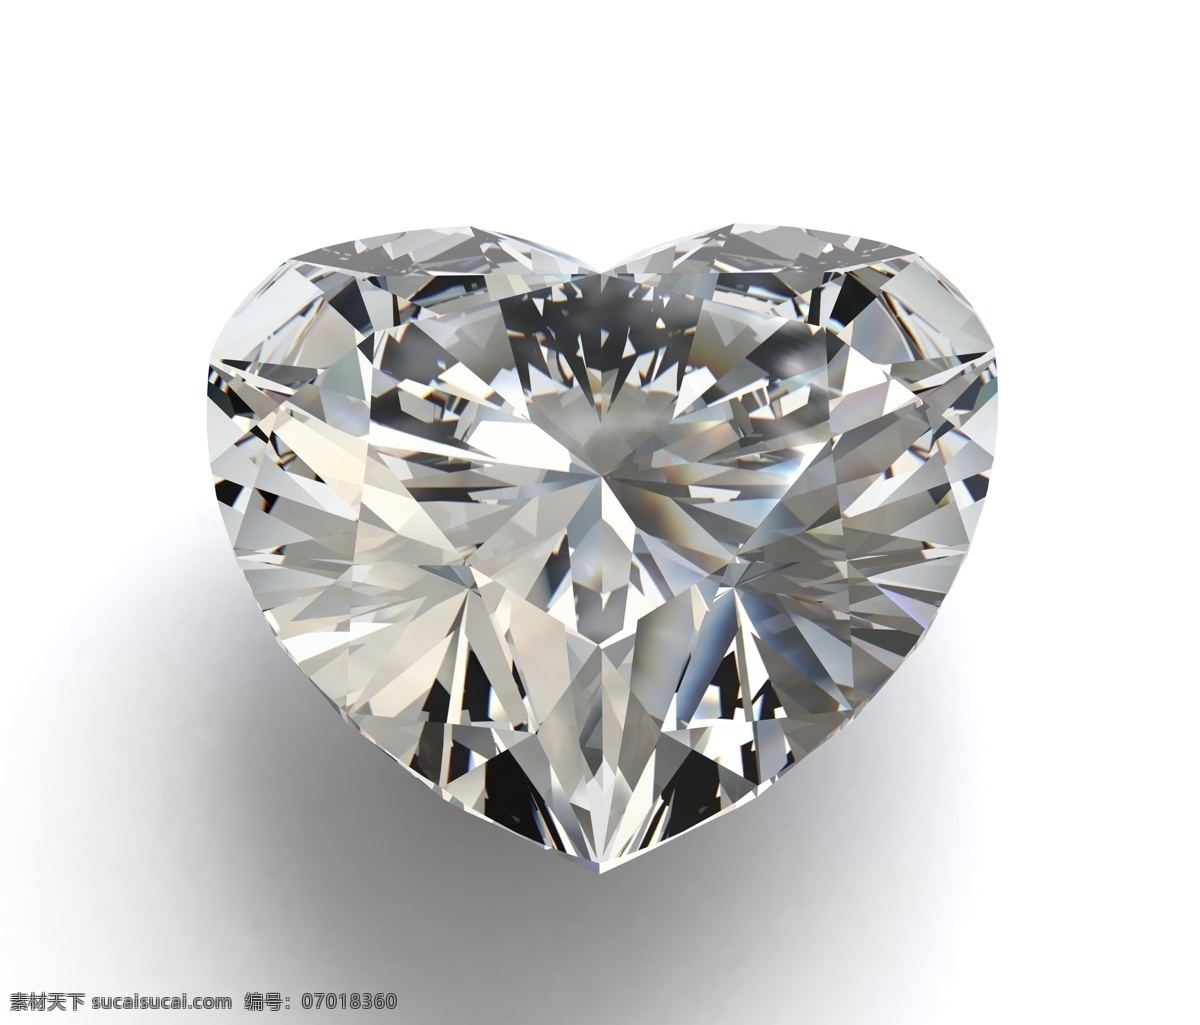 心形 钻石 心 爱心 心形钻石 钻石摄影 钻石素材 珠宝 饰品 首饰 珠宝服饰 生活百科